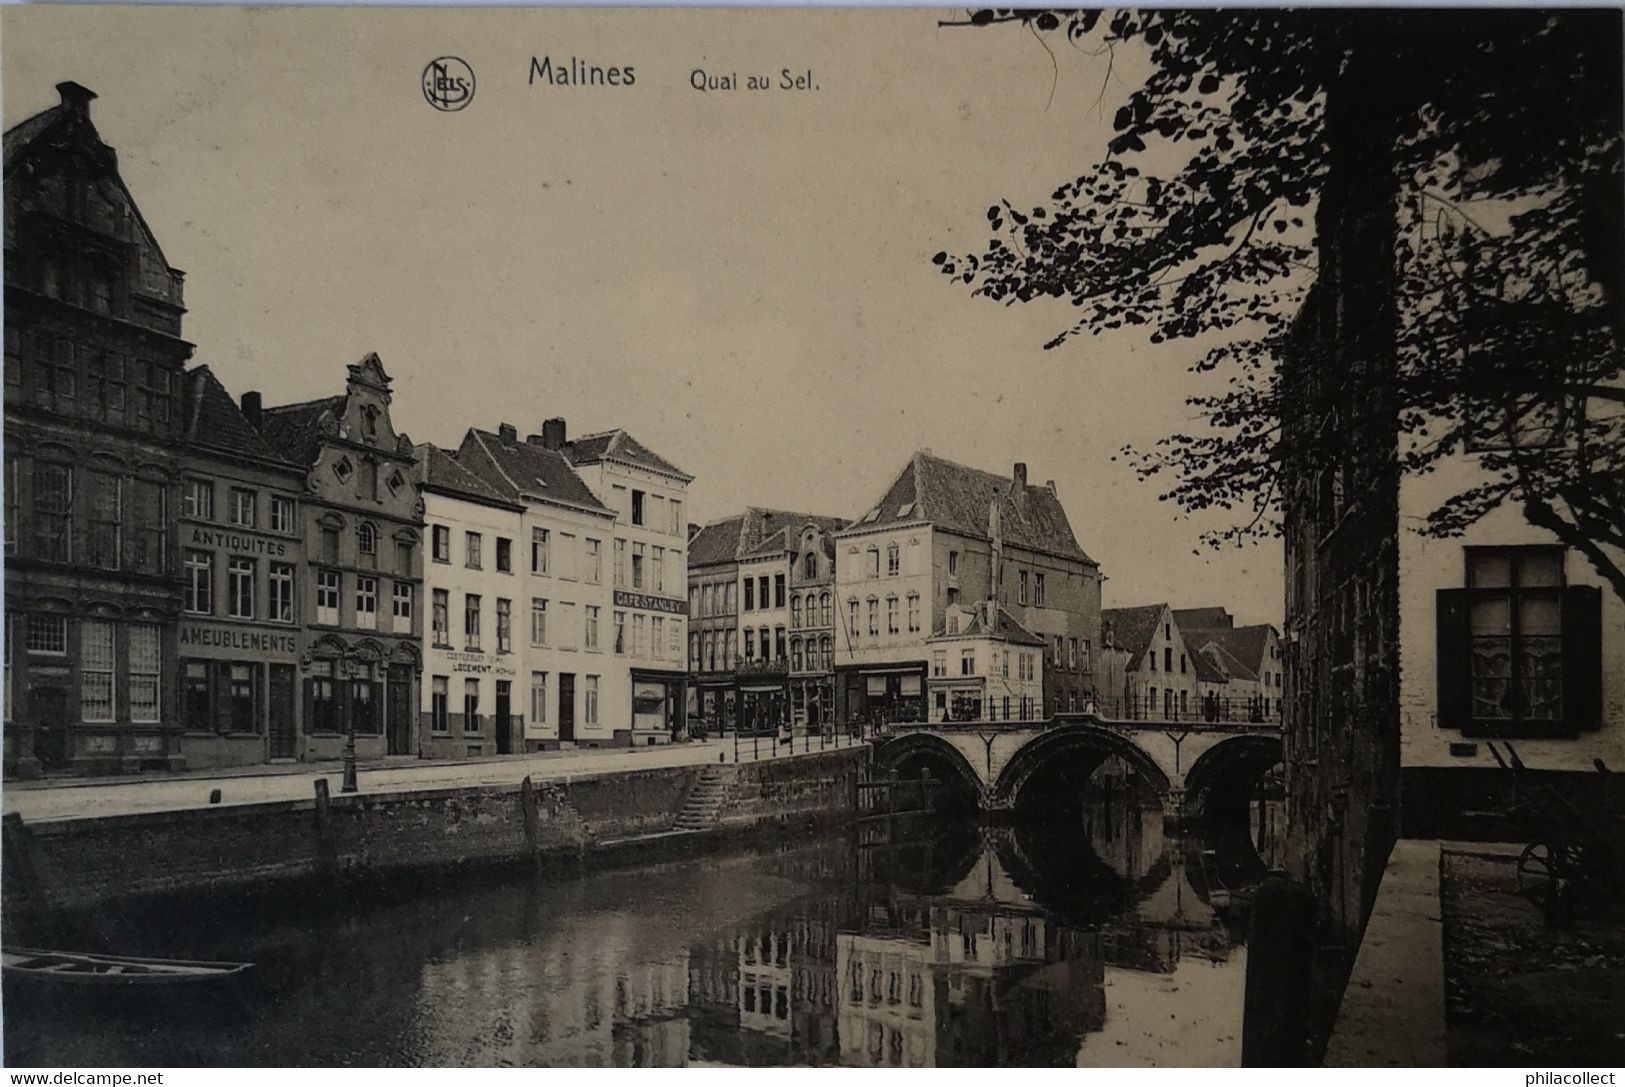 Mechelen - Malines / Quai Au Sel 19?? - Mechelen